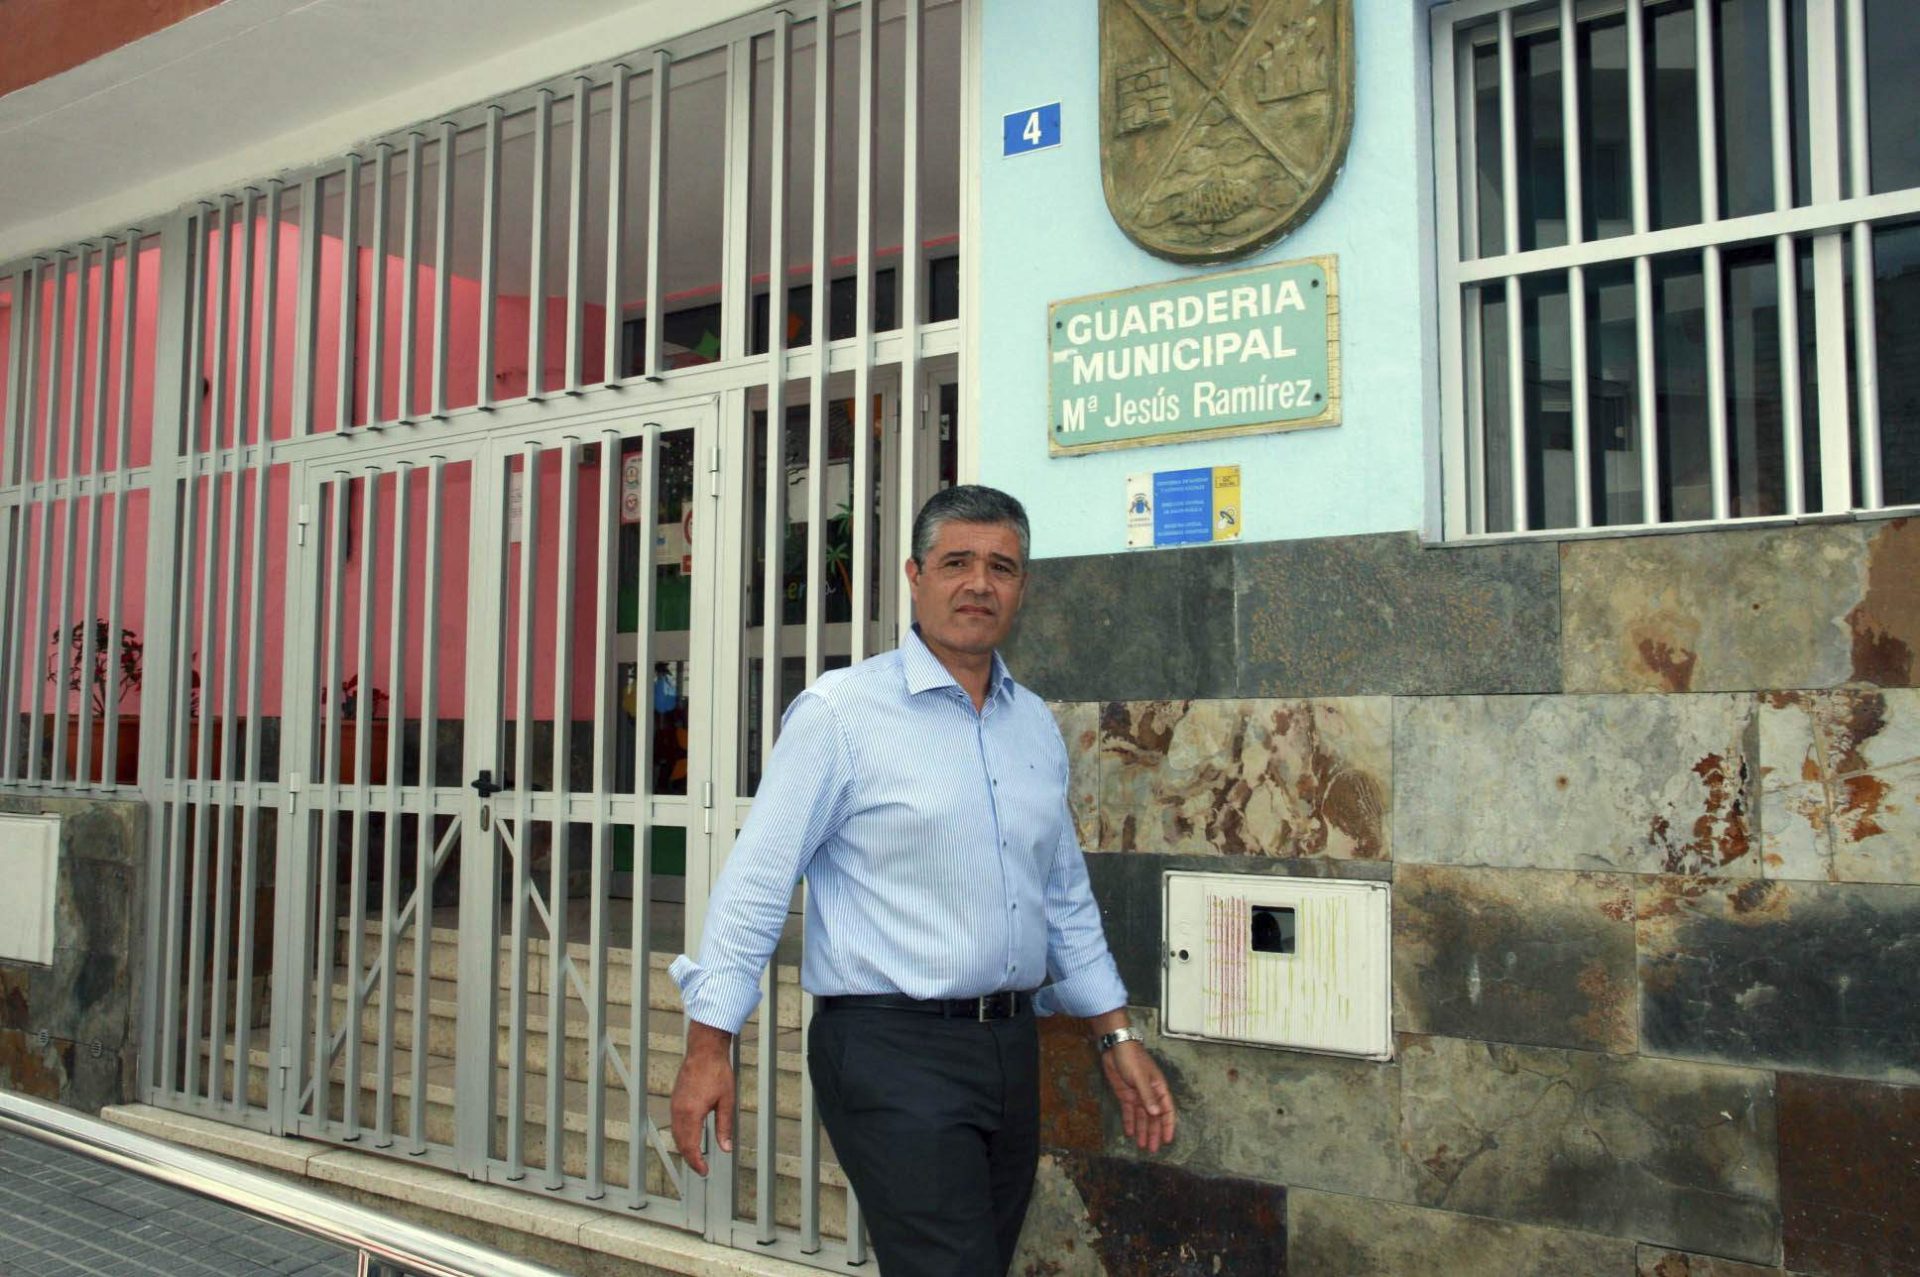 Foto de archivo del alcalde de Mogán (Gran Canaria) en los años a los que se remonta el "caso Góndola", Francisco González. EFE